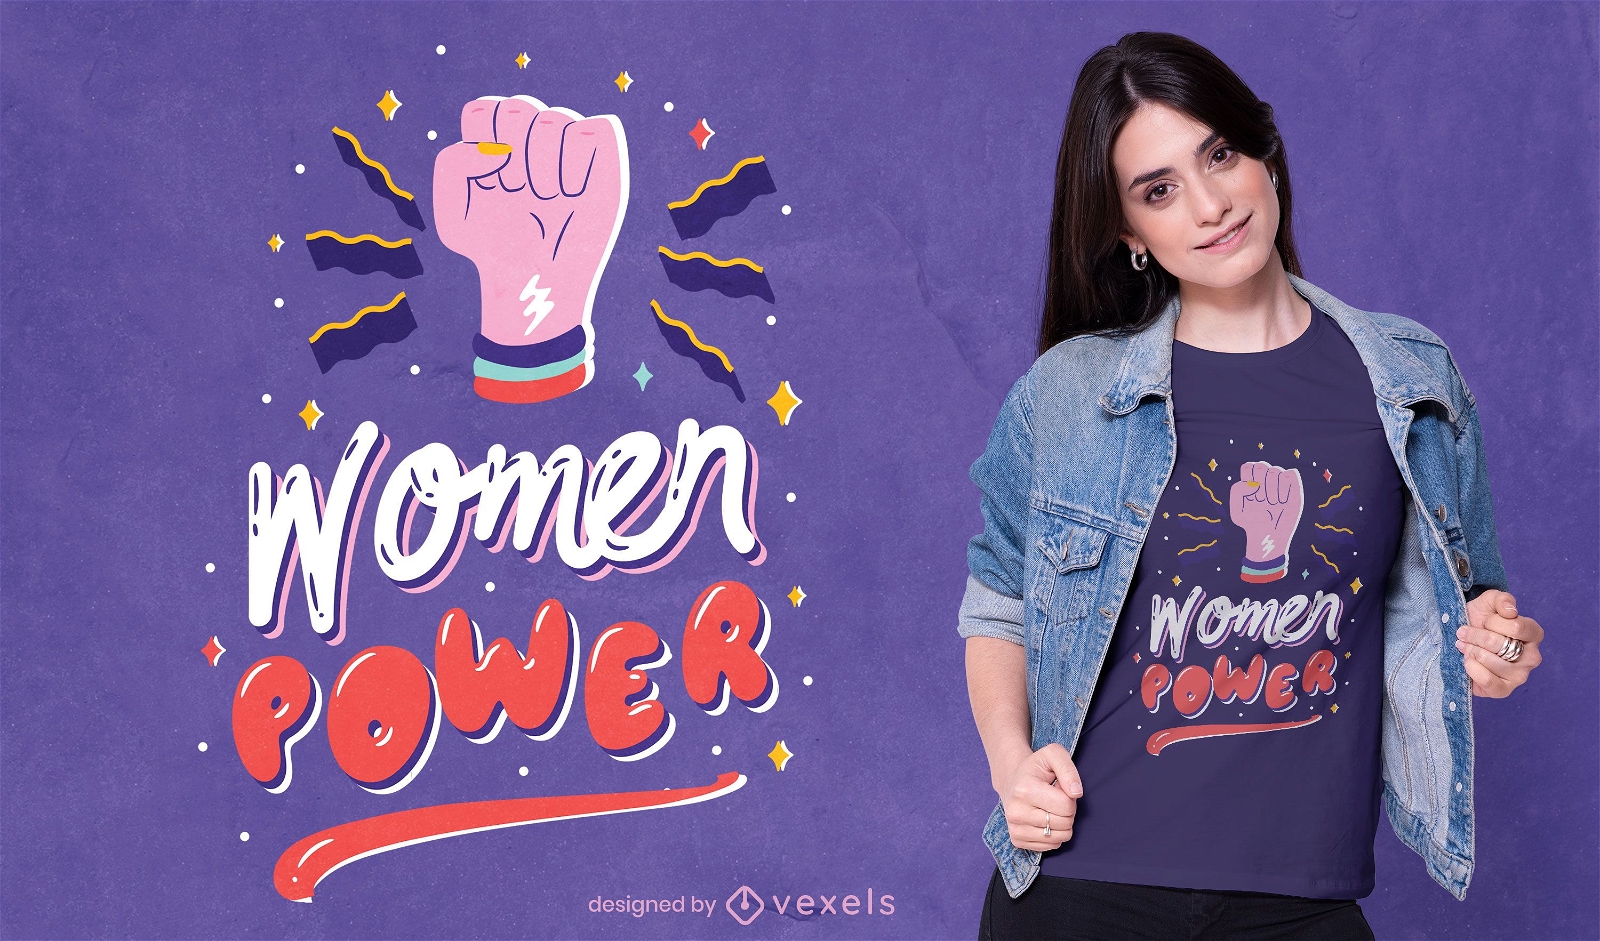 Diseño de camiseta feminista de poder femenino.